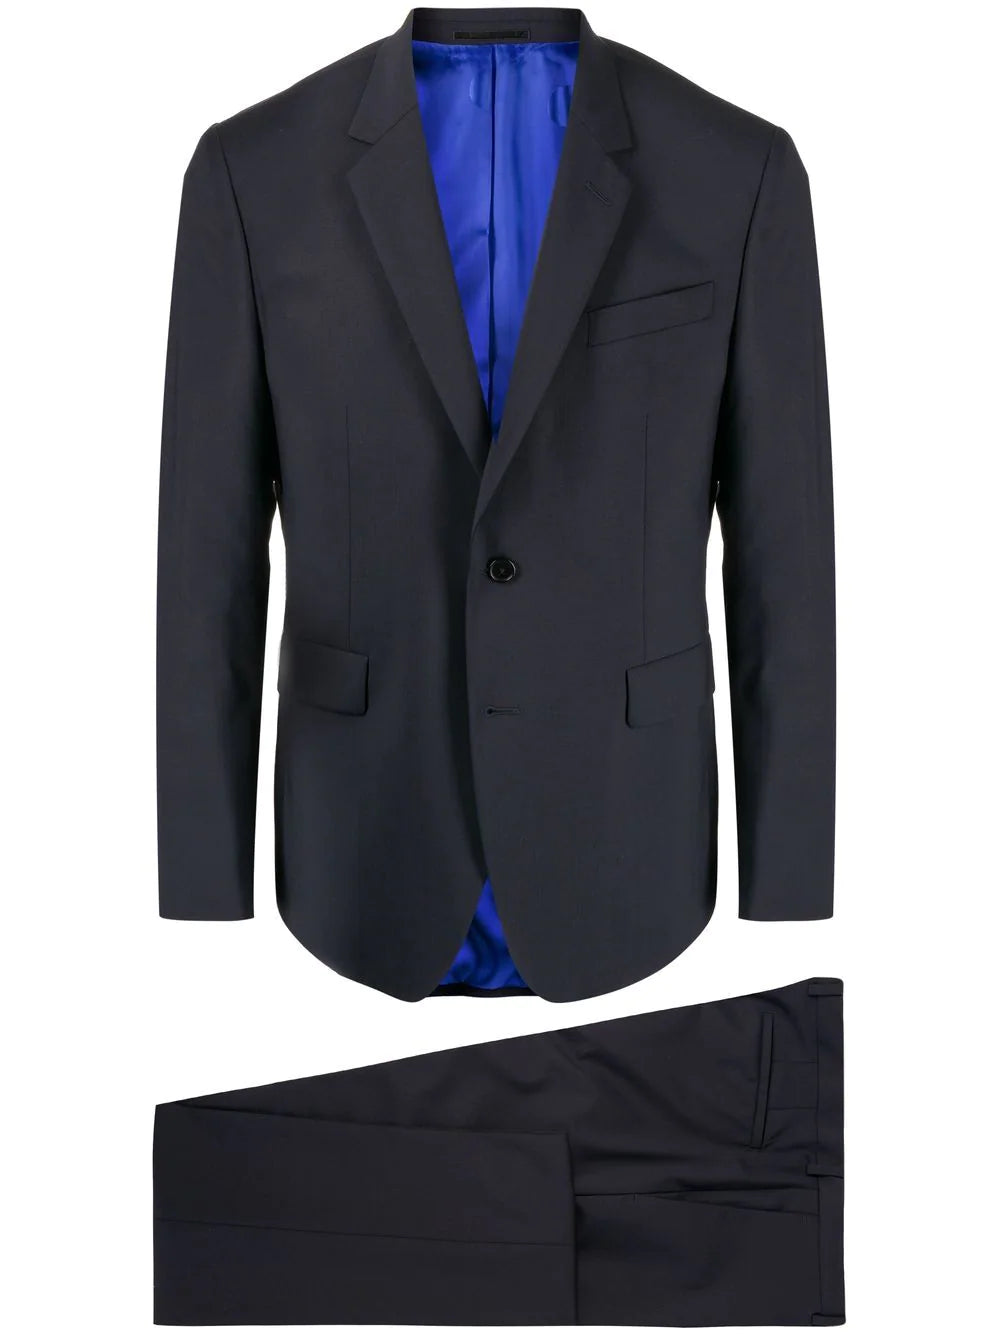 Paul Smith Kensington Slim-Fit Suit